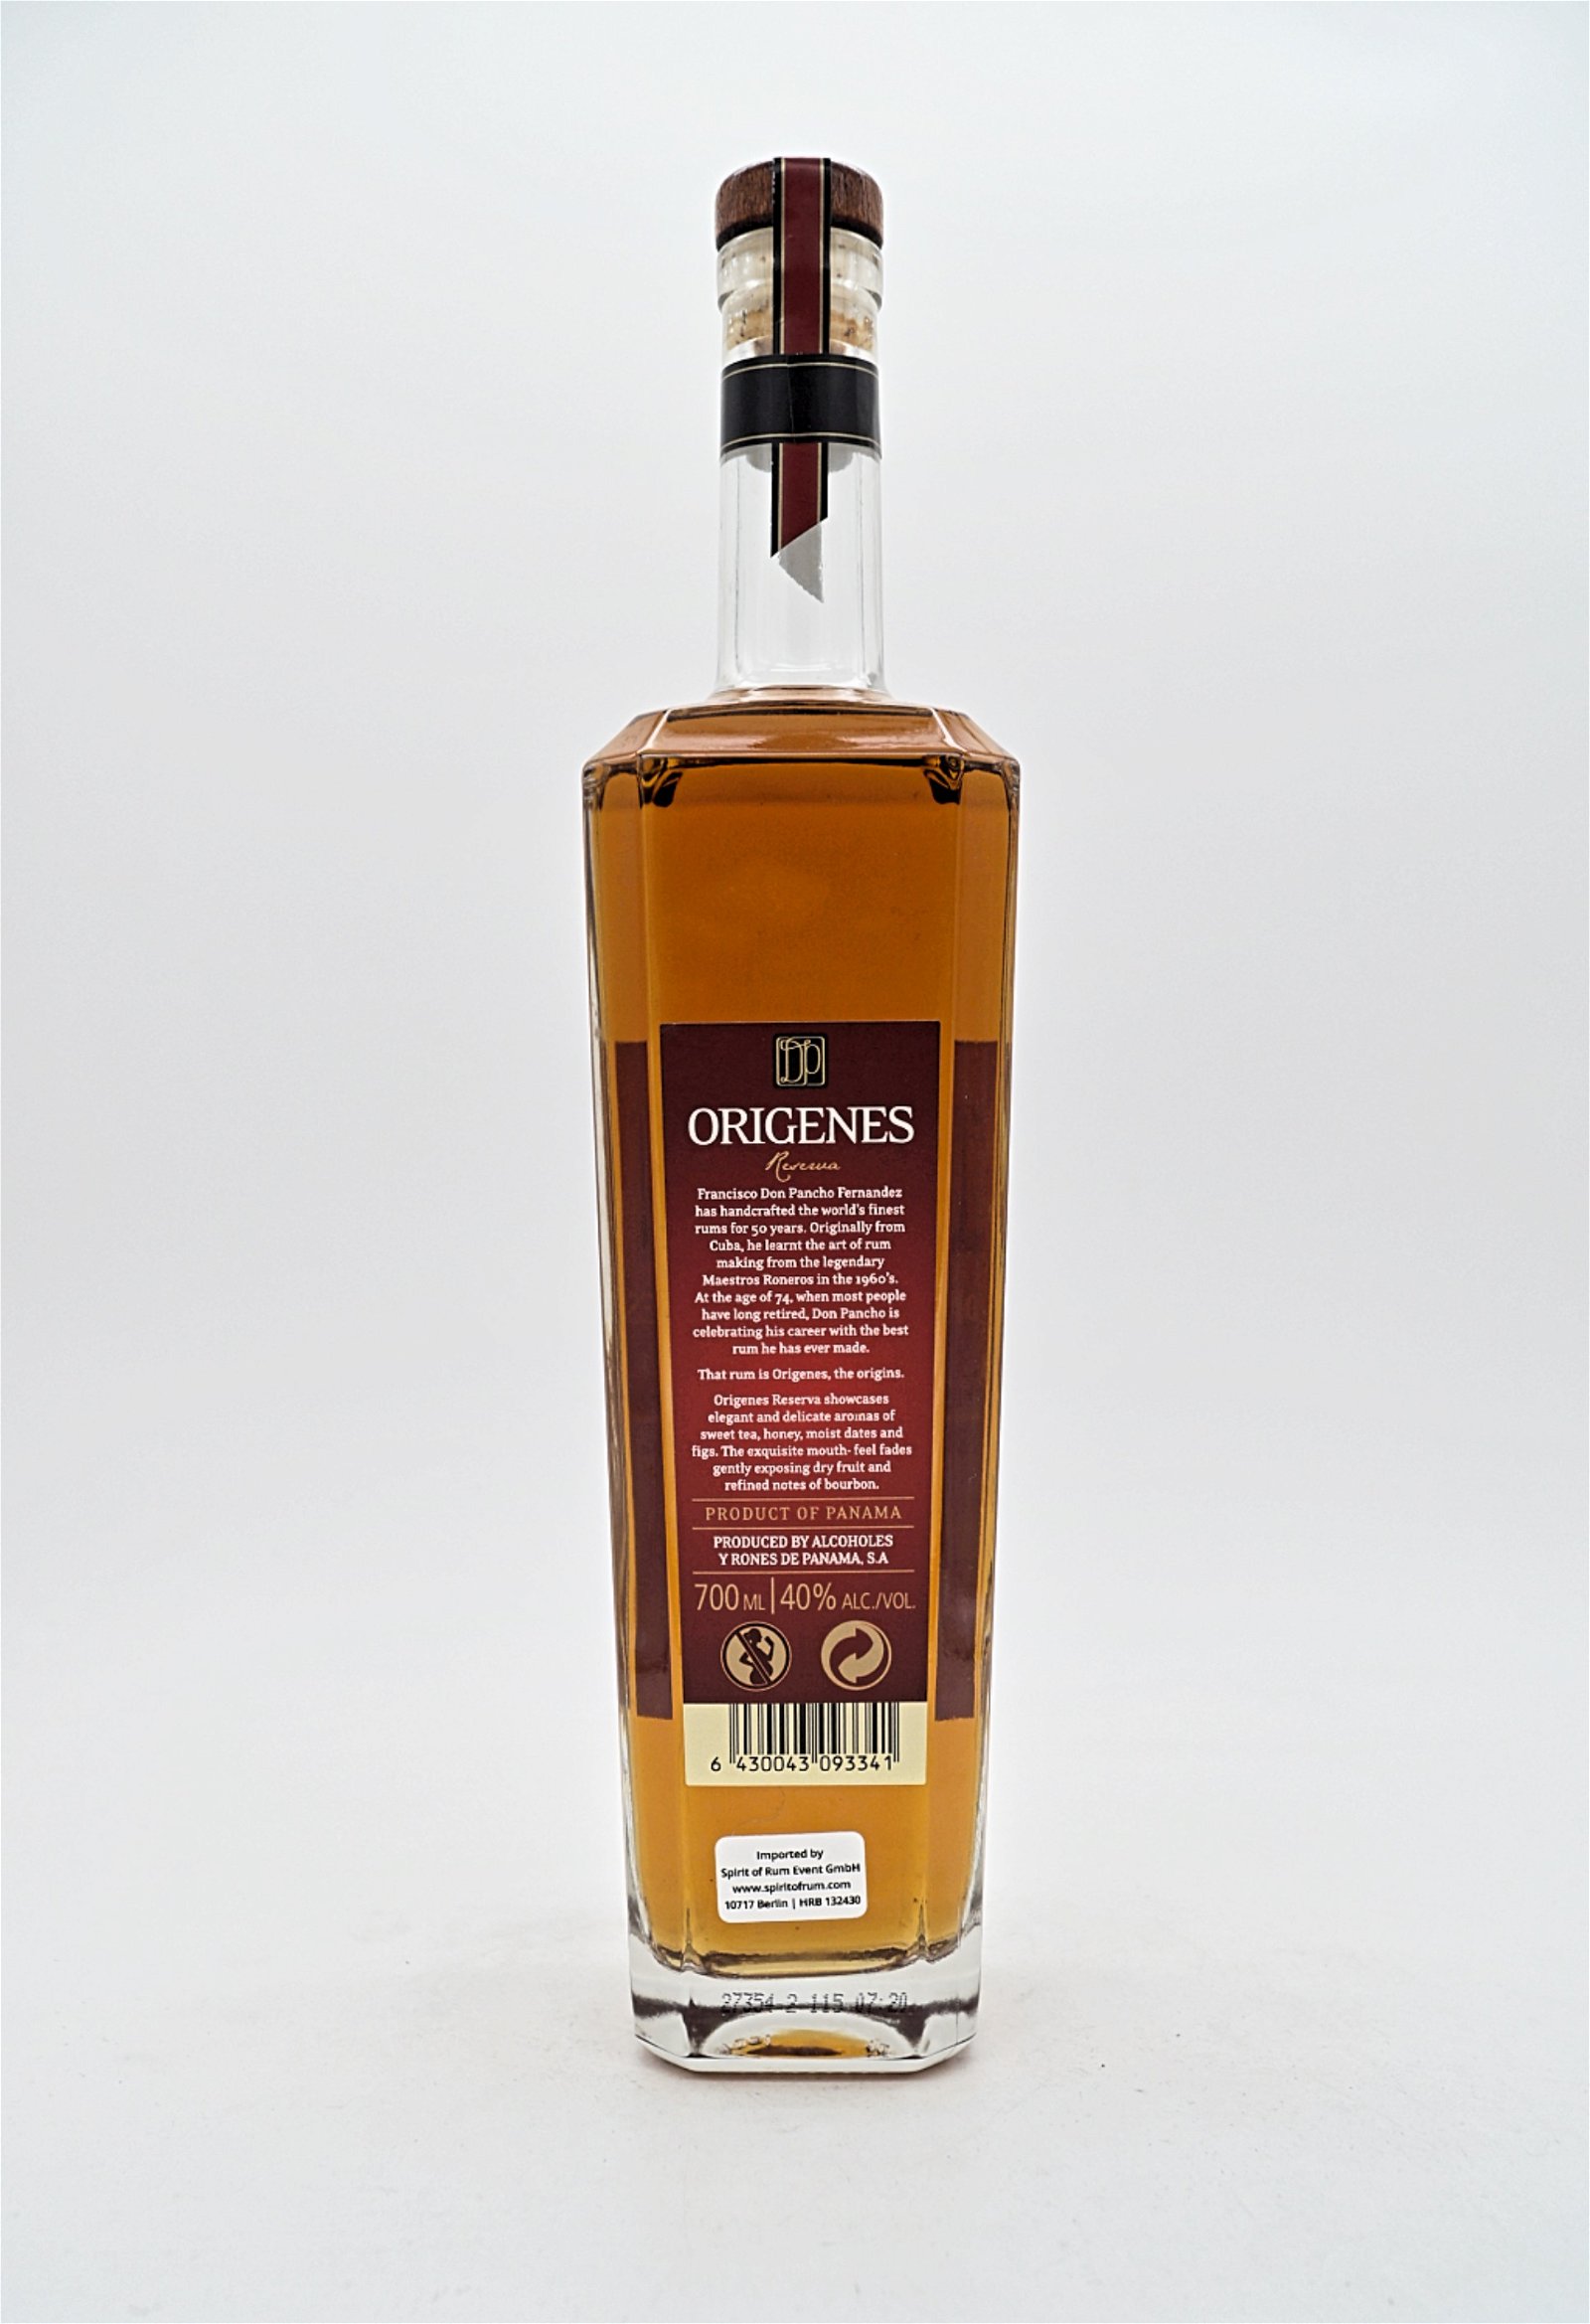 Origenes 8 Jahre Reserva Premium Panamanian Rum